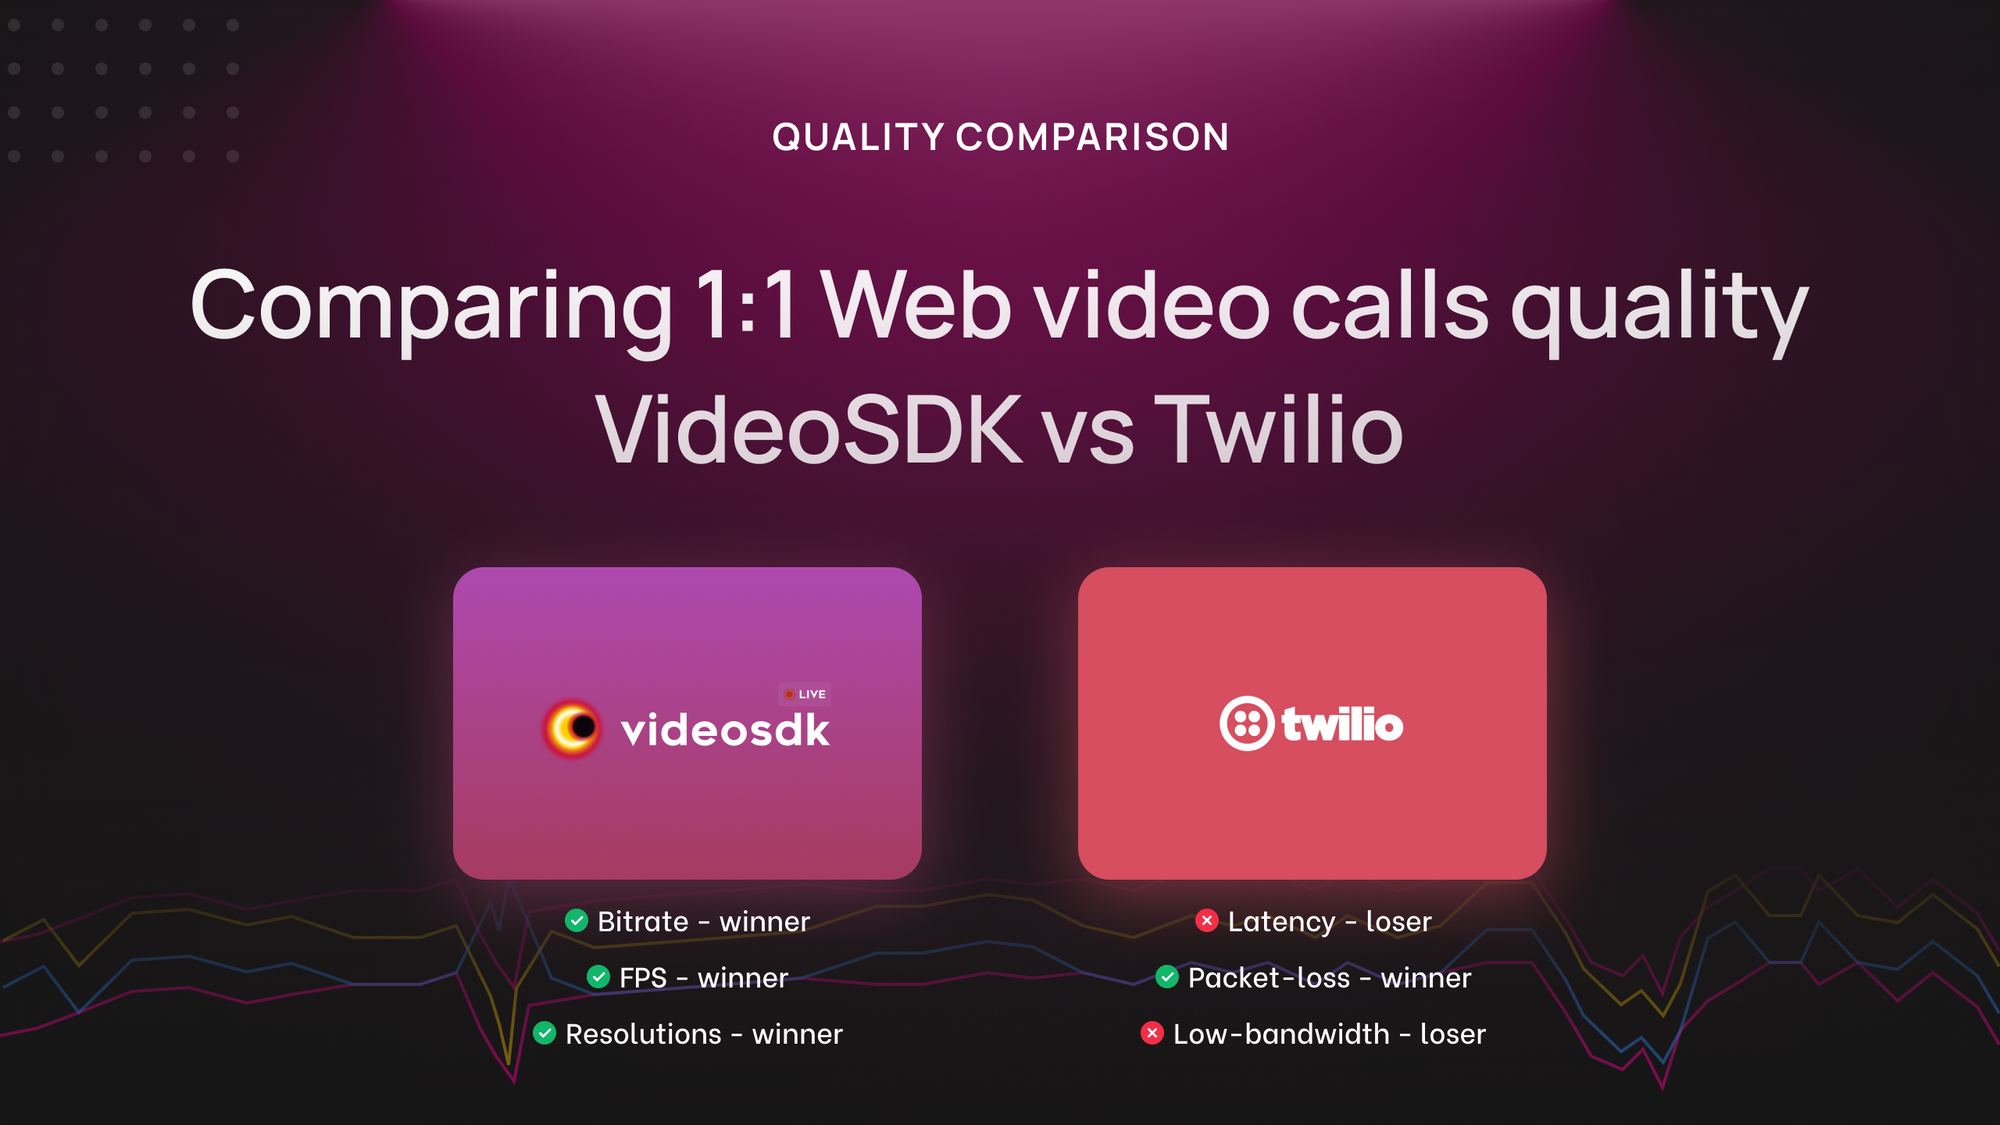 Quality Comparison: VideoSDK vs Twilio in Web 1:1 Video Calls